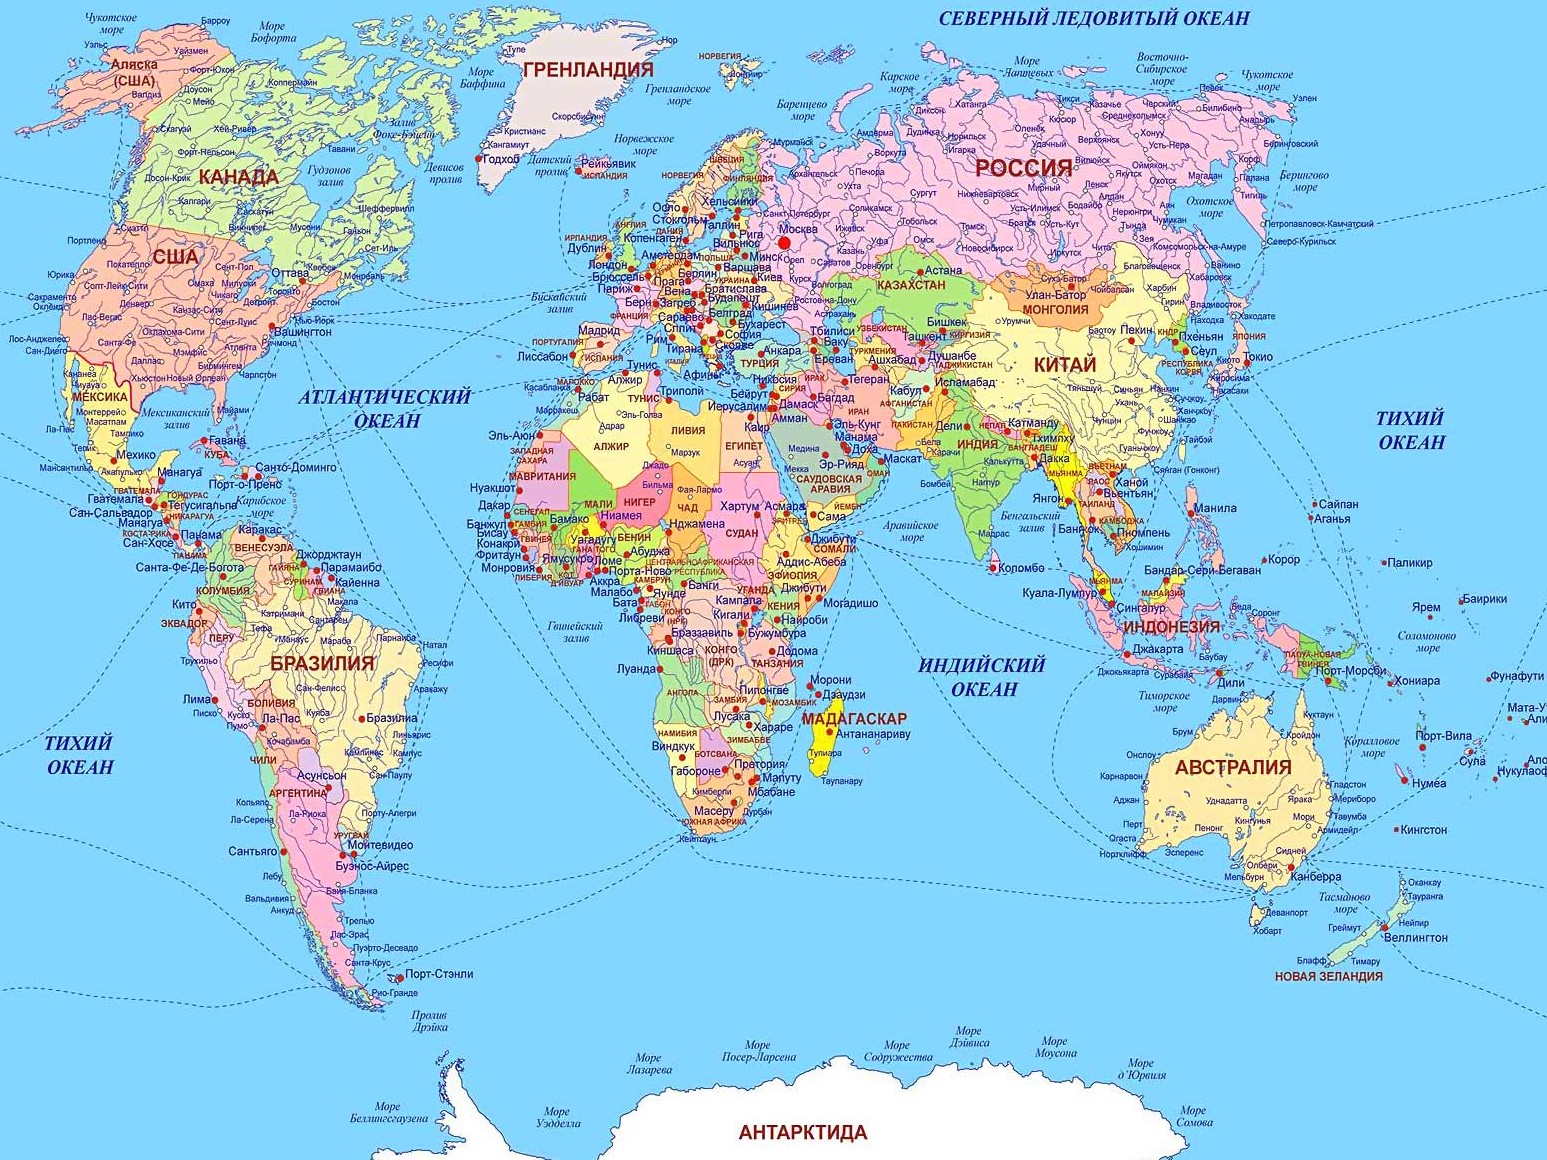 Контакты веб студии ТОП на карте мира